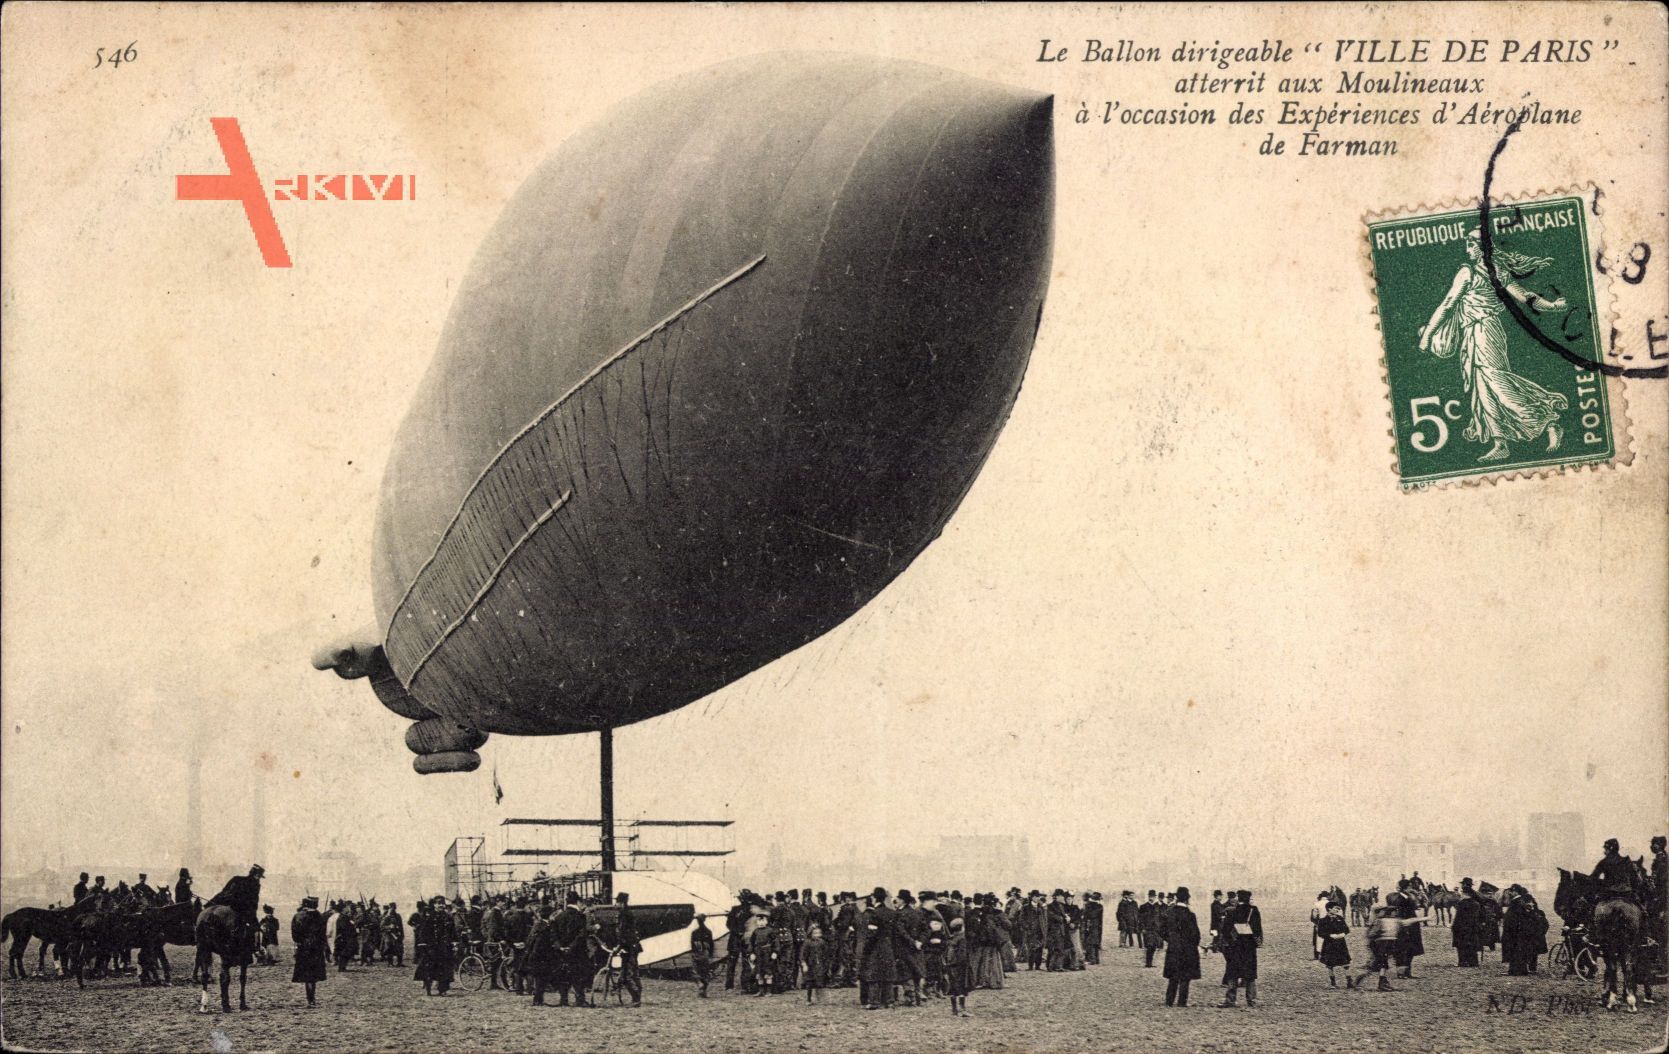 Le Ballon dirigéable Ville de Paris atterrit aux Moulineaux, Aéroplane Farman